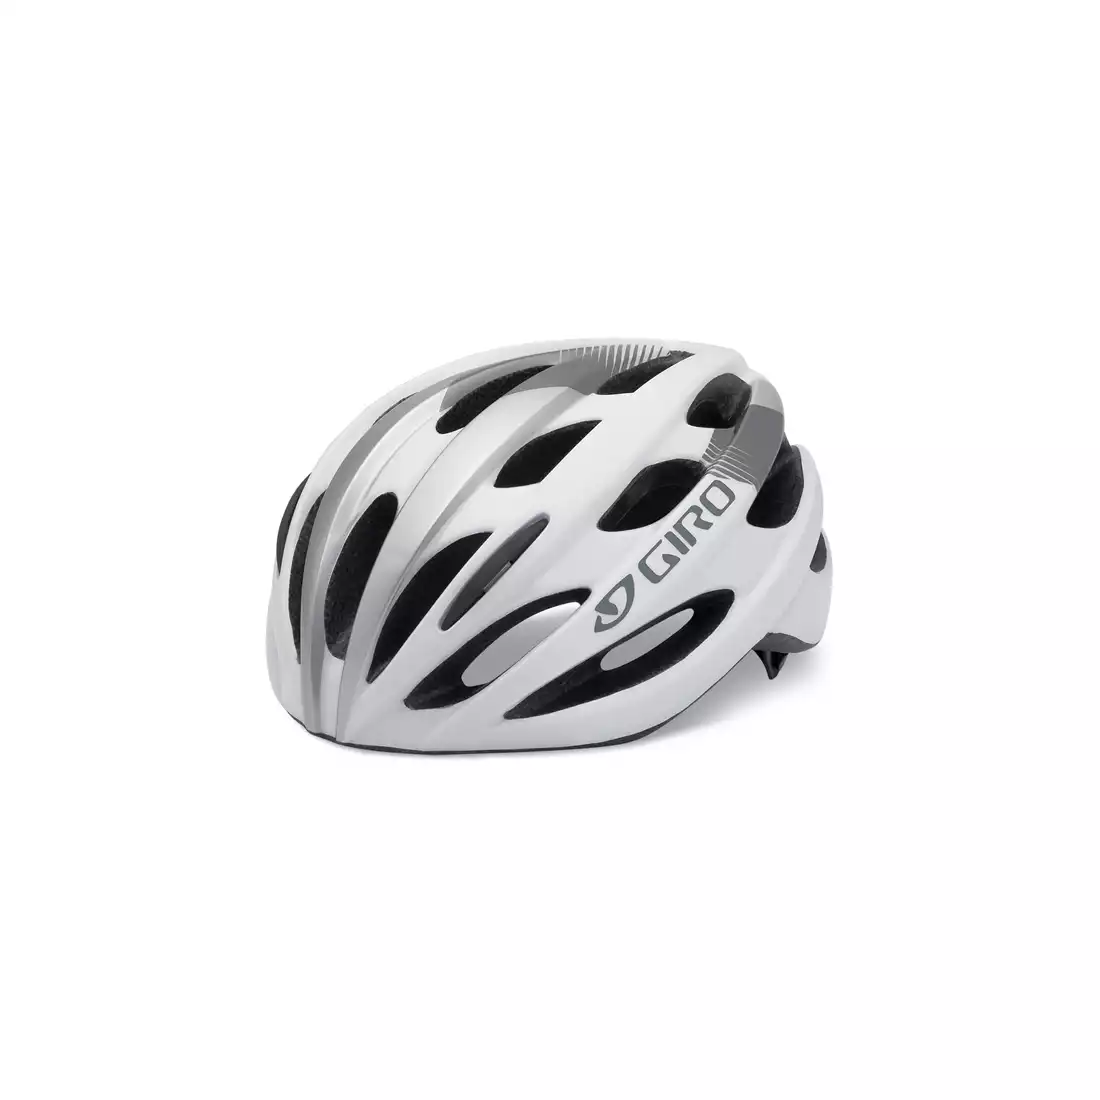 GIRO TRINITY kask rowerowy, biało-srebrny